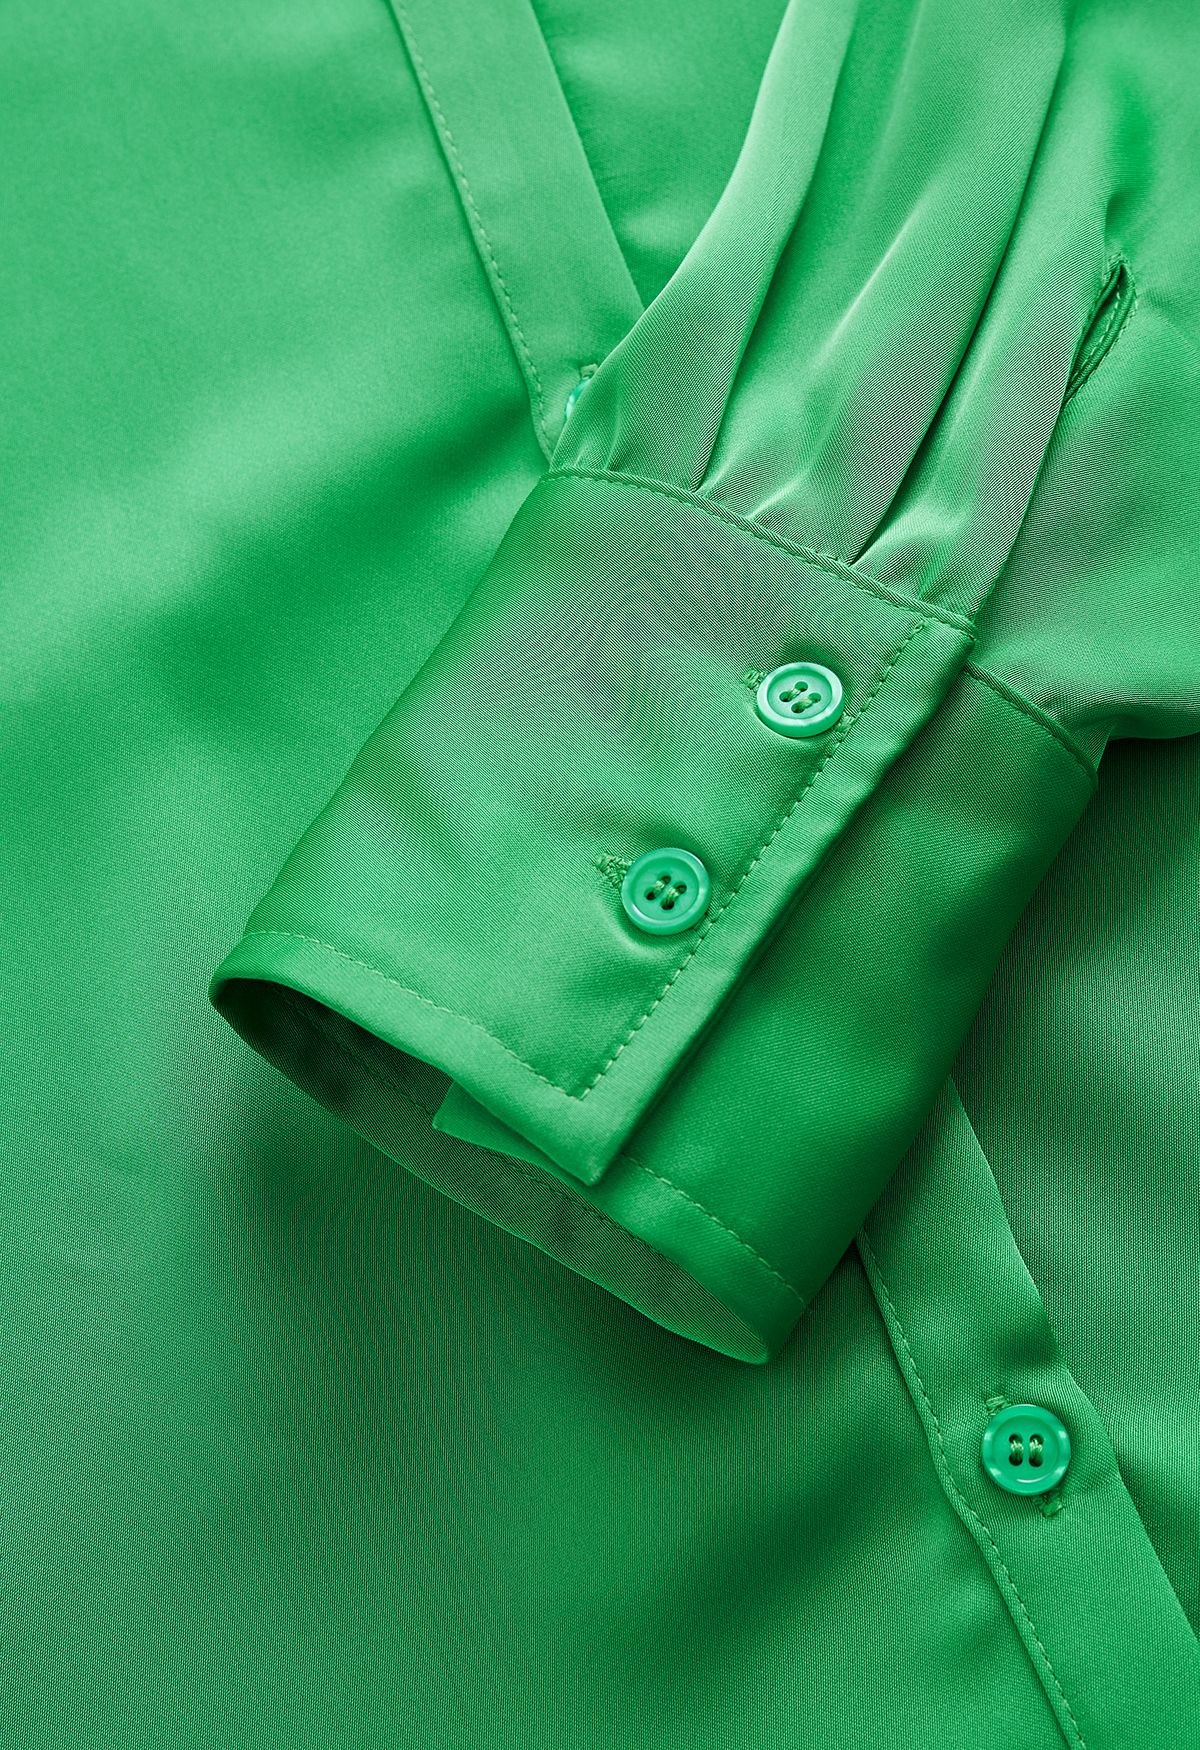 Satin Finish Button Up Shirt in Green